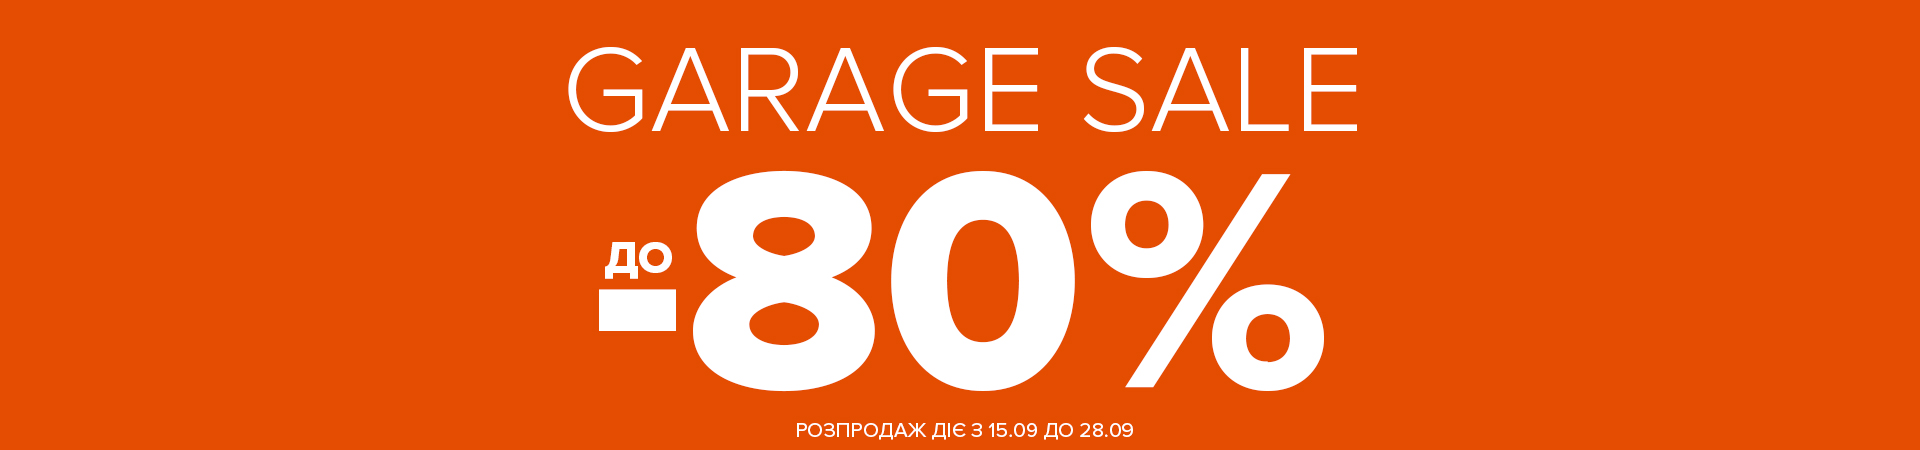 Garage sale до -80%